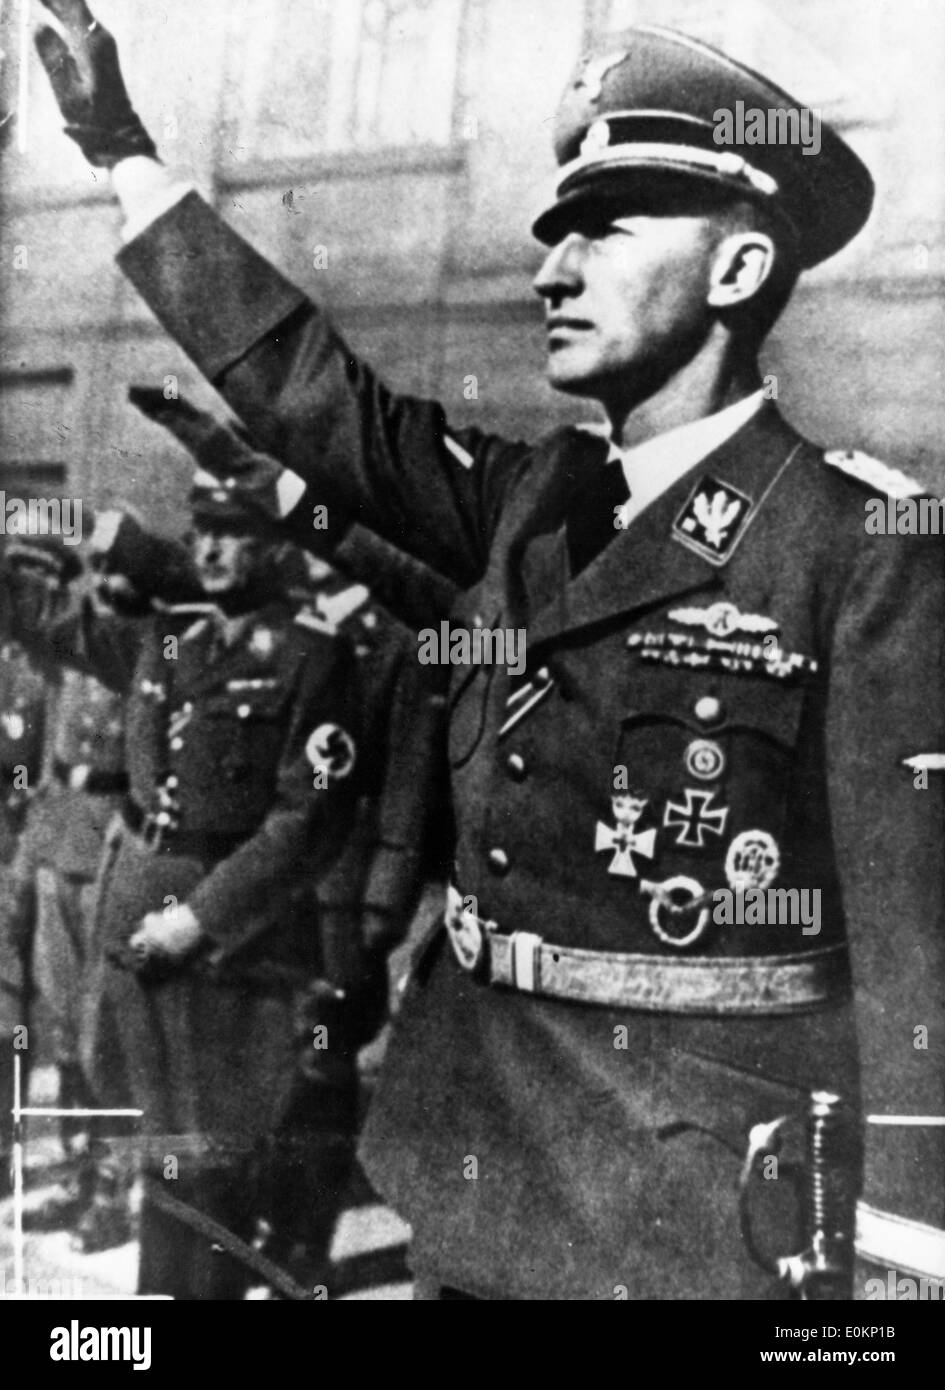 01 janvier 1942 - Allemagne - dossier Photo : vers 1942, l'emplacement exact inconnu. Portrait d'un leader Nazi Reinhard Heydrich. Banque D'Images